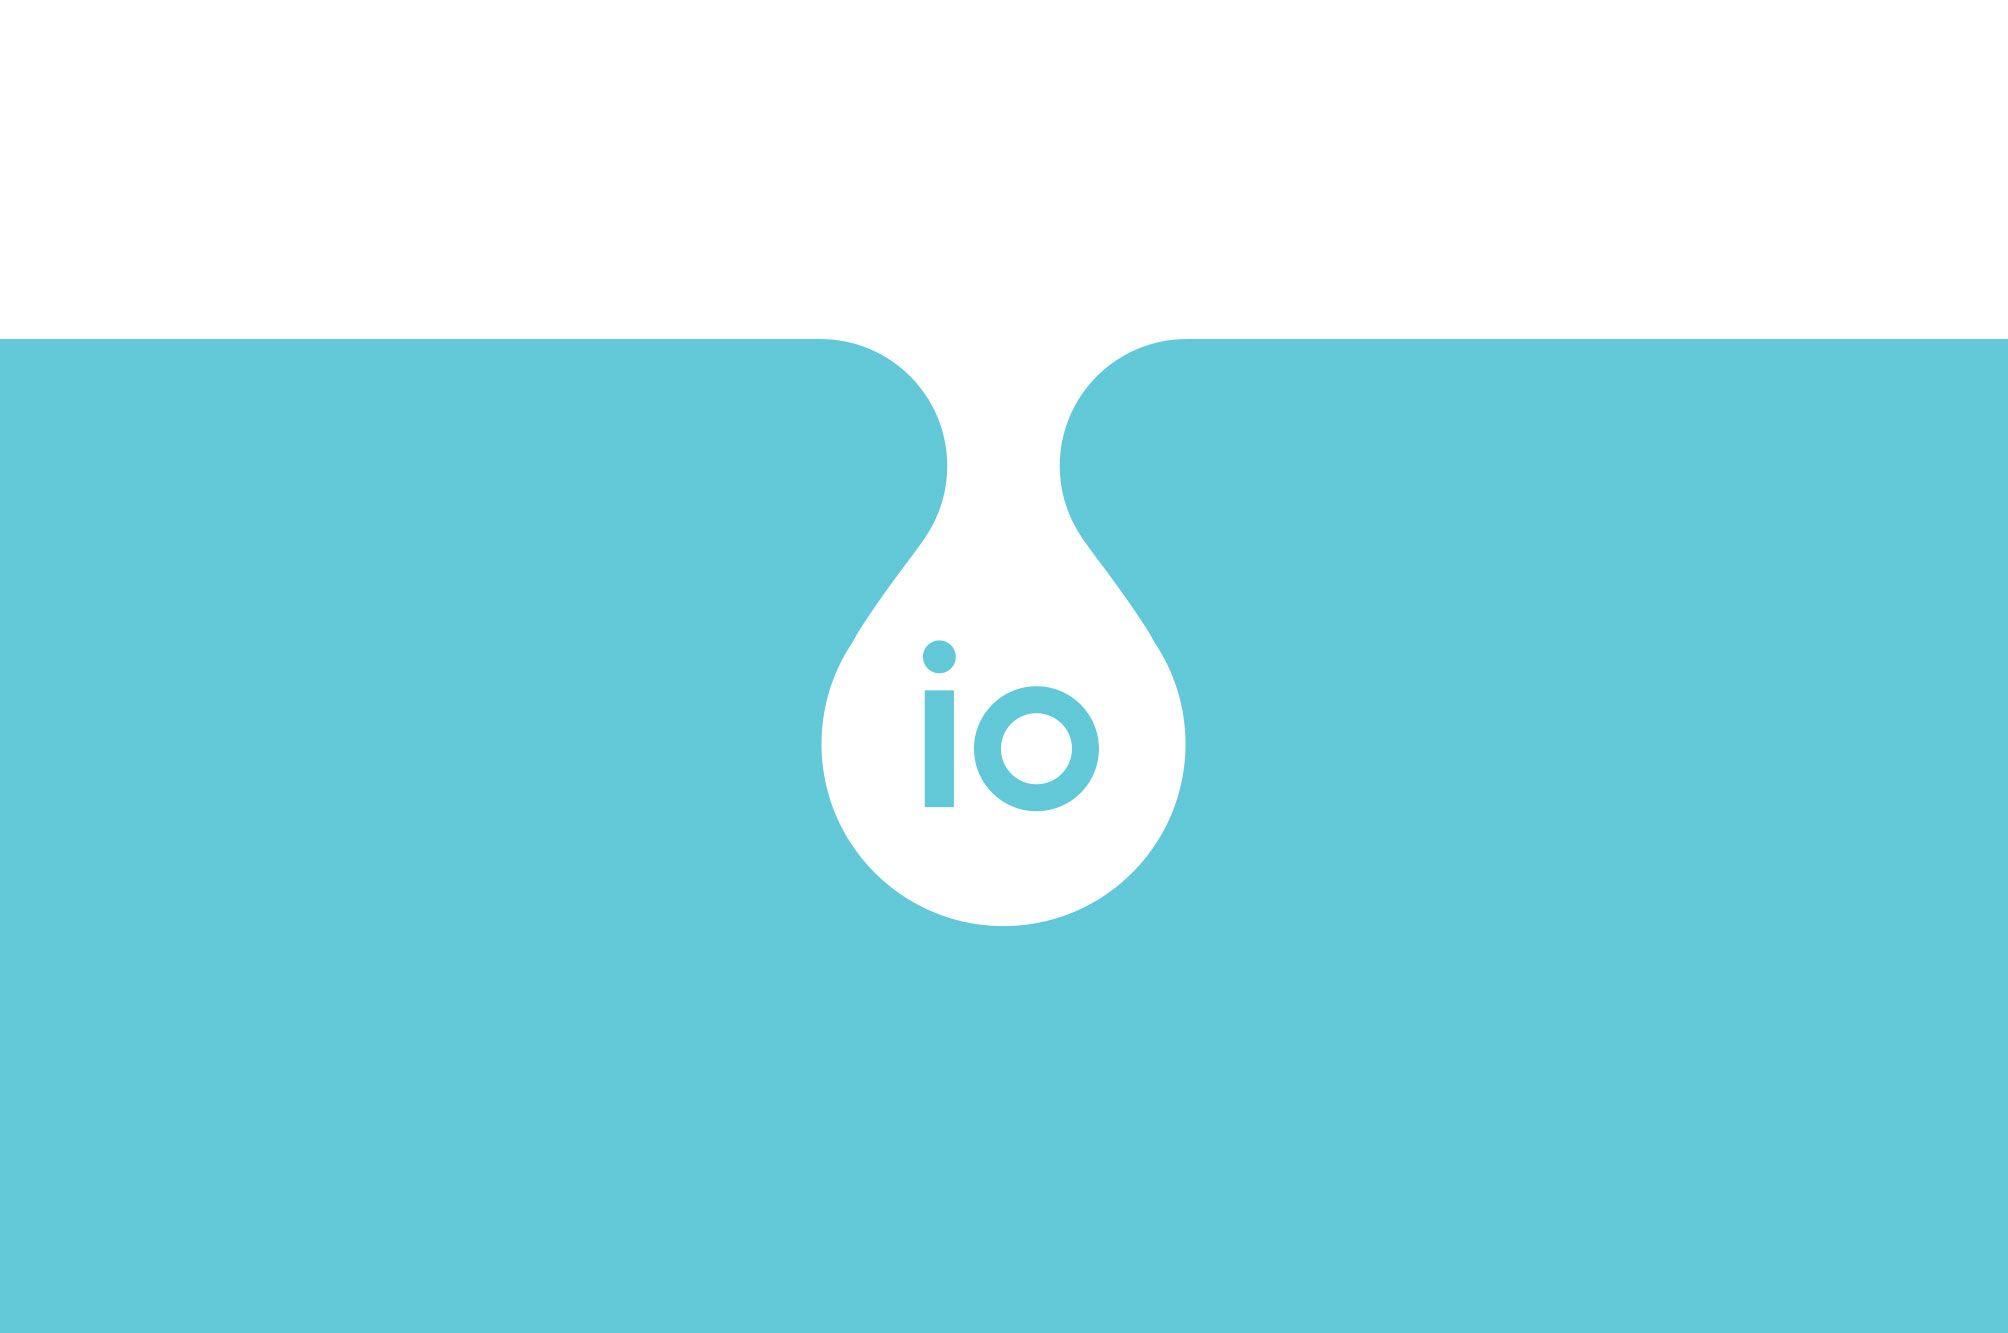 Io Logo - IO Water Bottle | WeDesign